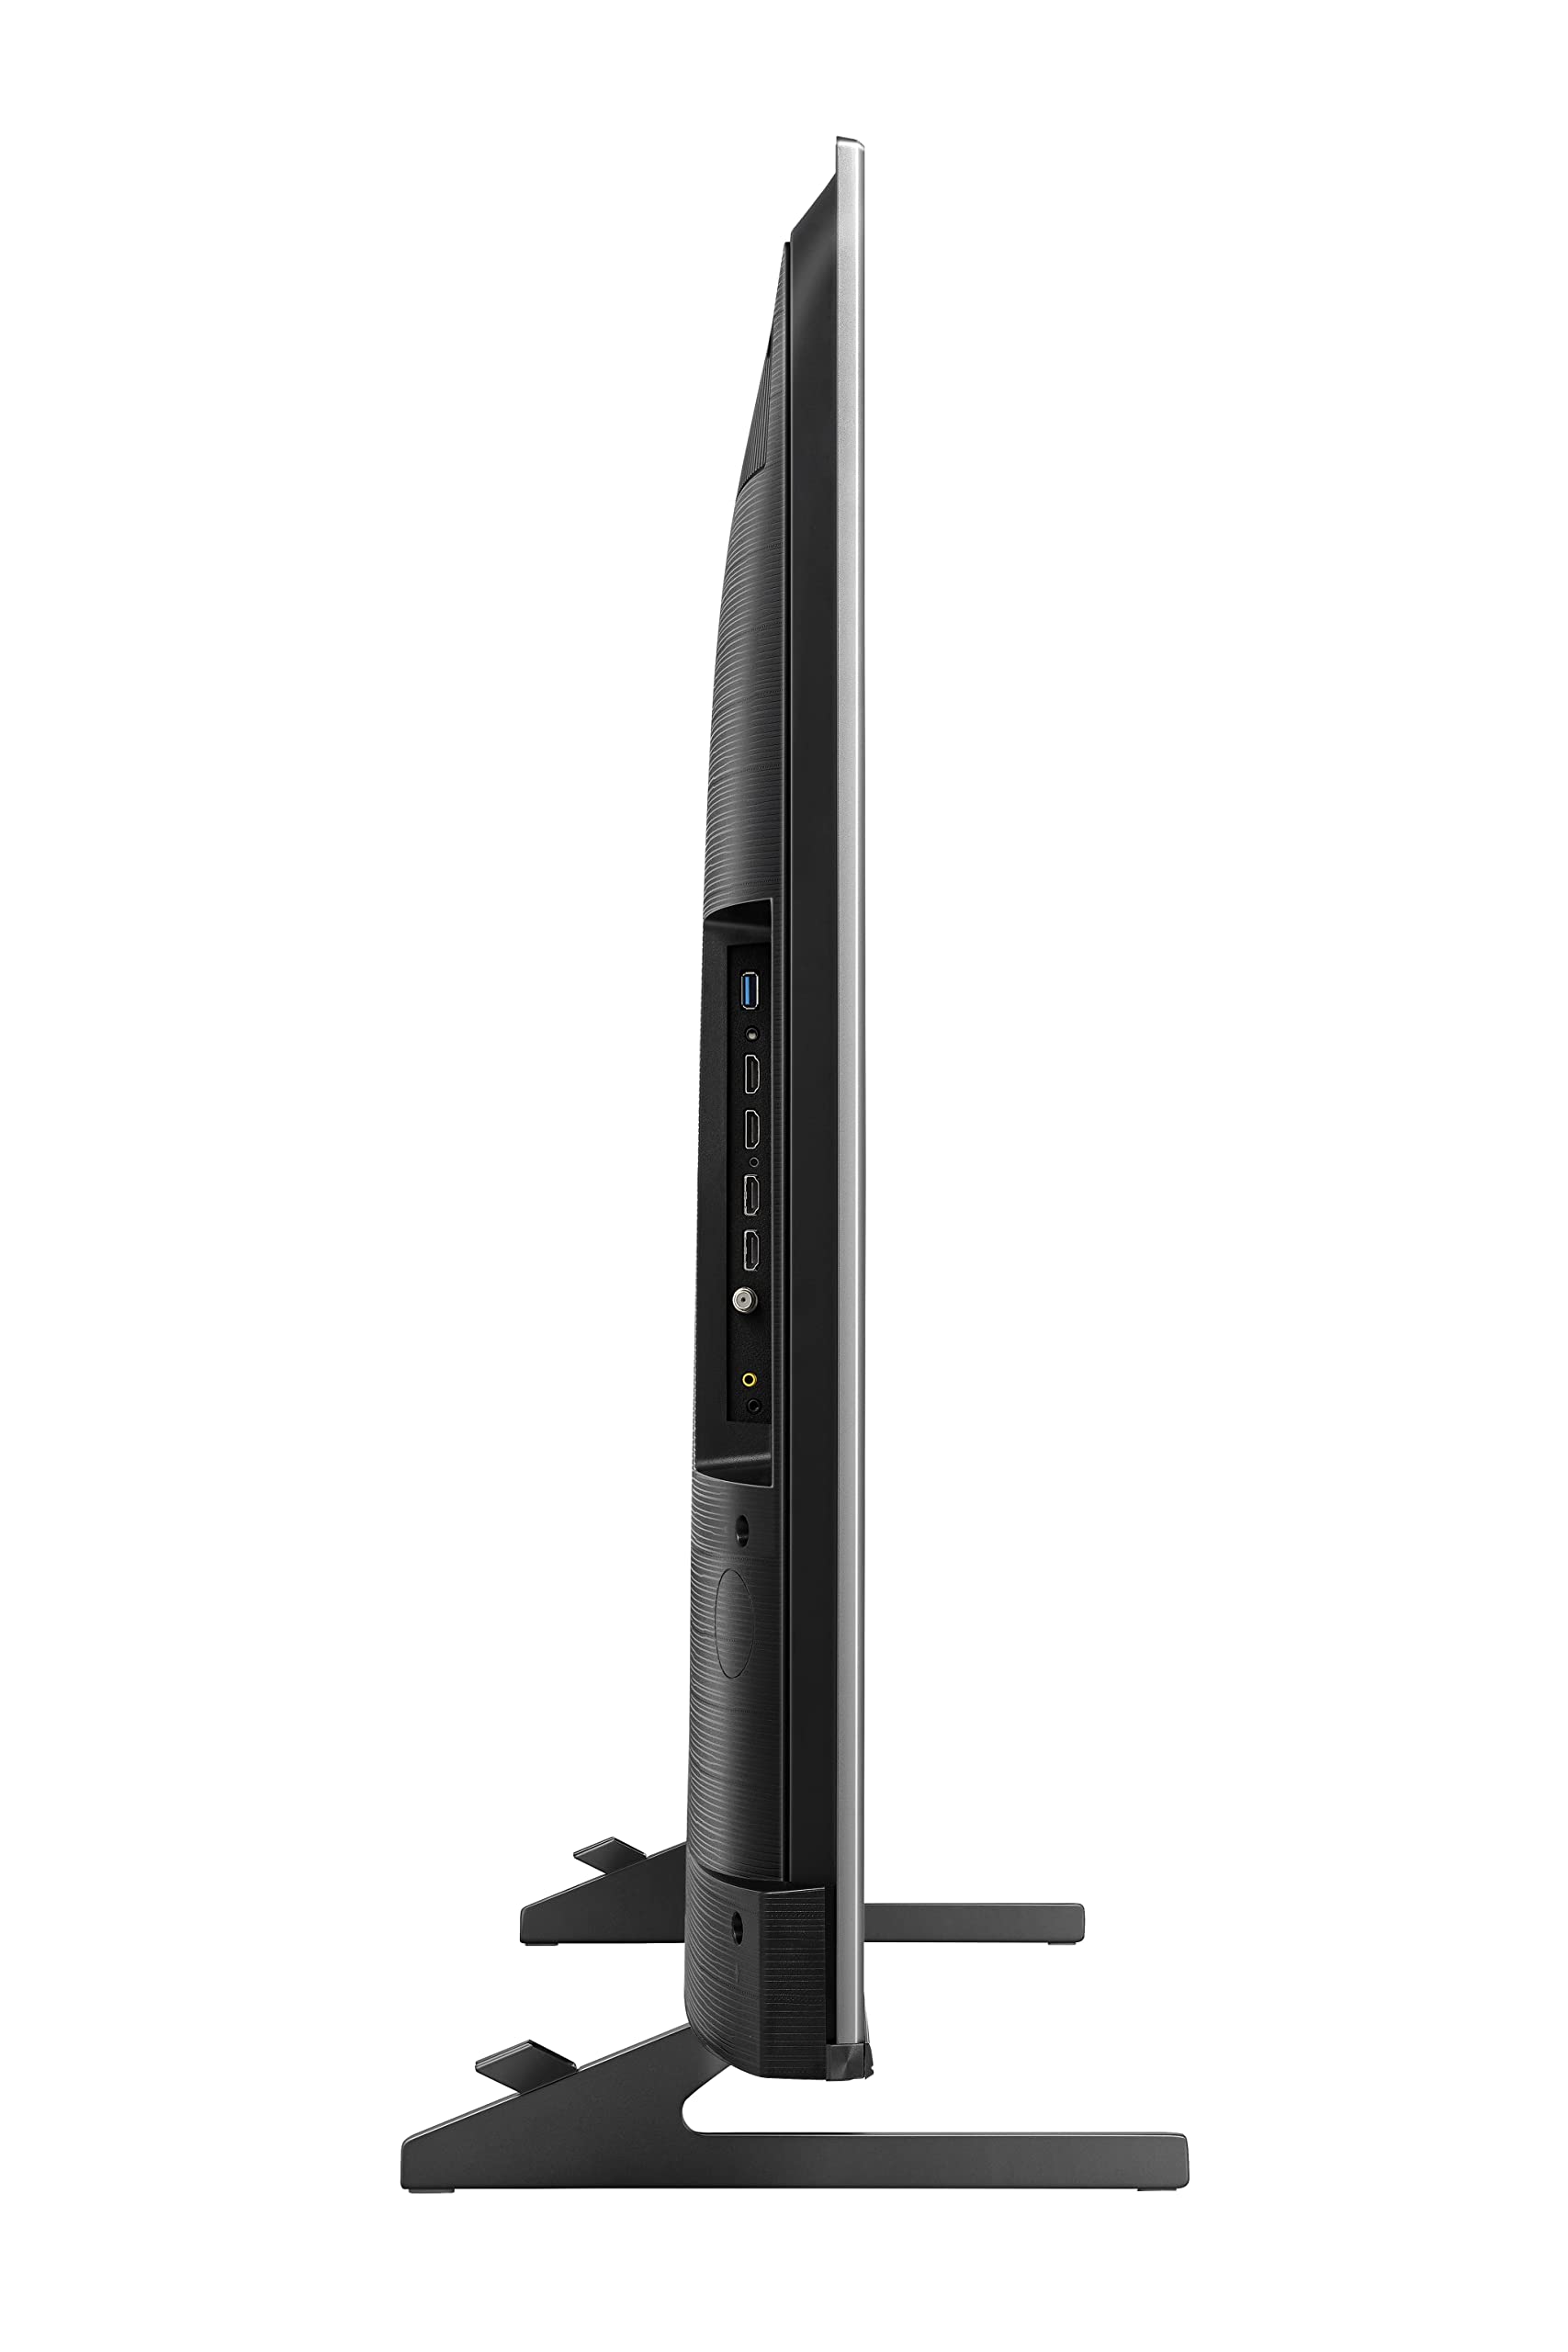 Hisense 55U8H QLED U8H Series Quantum 4K ULED Mini-LED 55-Inch Class Google Smart TV with Alexa Compatibility, Quantum Dot, 1500-Nit HDR10+, Black